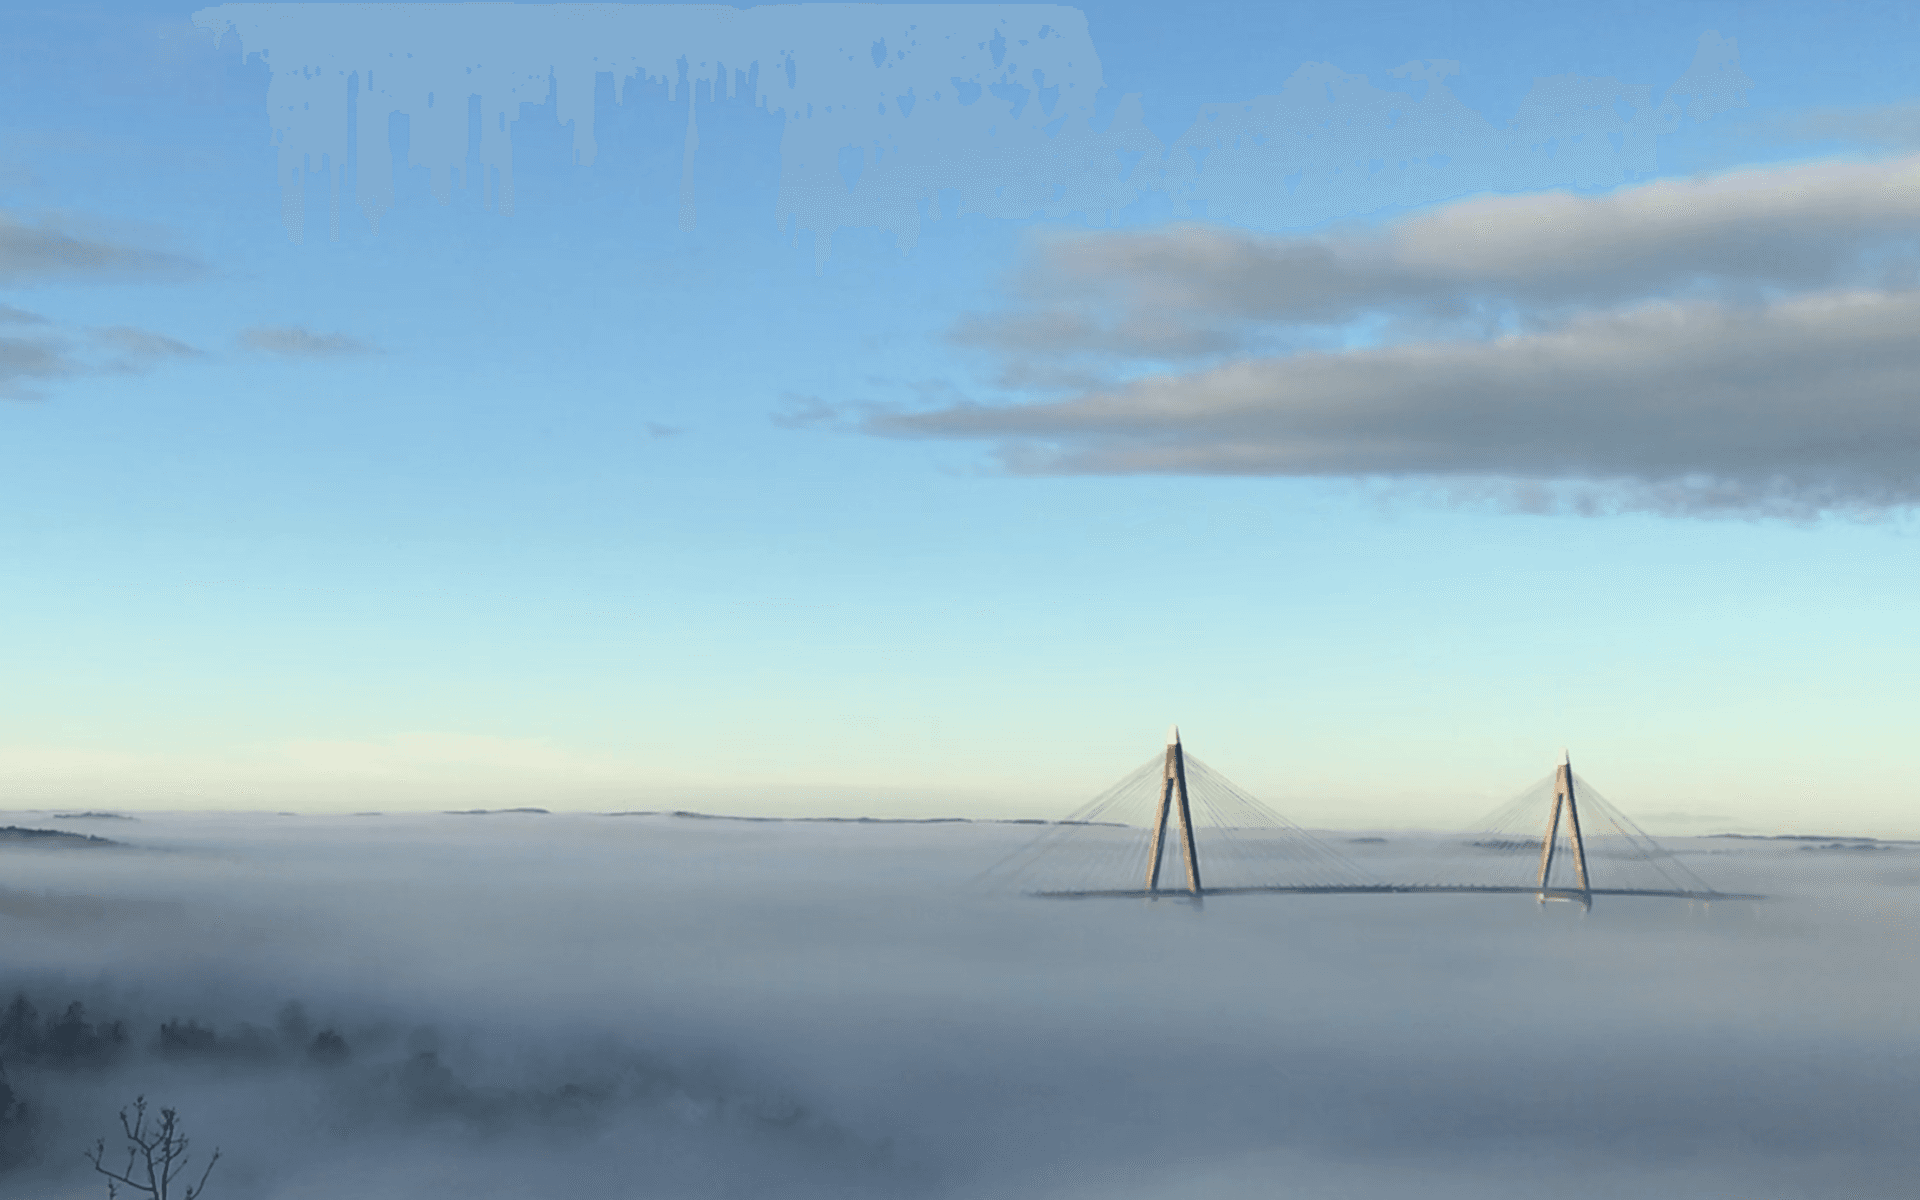 ”Dimman ligger längs med vattnet men inte så högt upp så Uddevallabron försvinner. Man ser också lite längta bort topparna utav träden. Bilden är tagen vid Sundsstrand 30/12-18. Så häftigt att man bara ser en liten del utav vägen och sedan bara försvinner.”